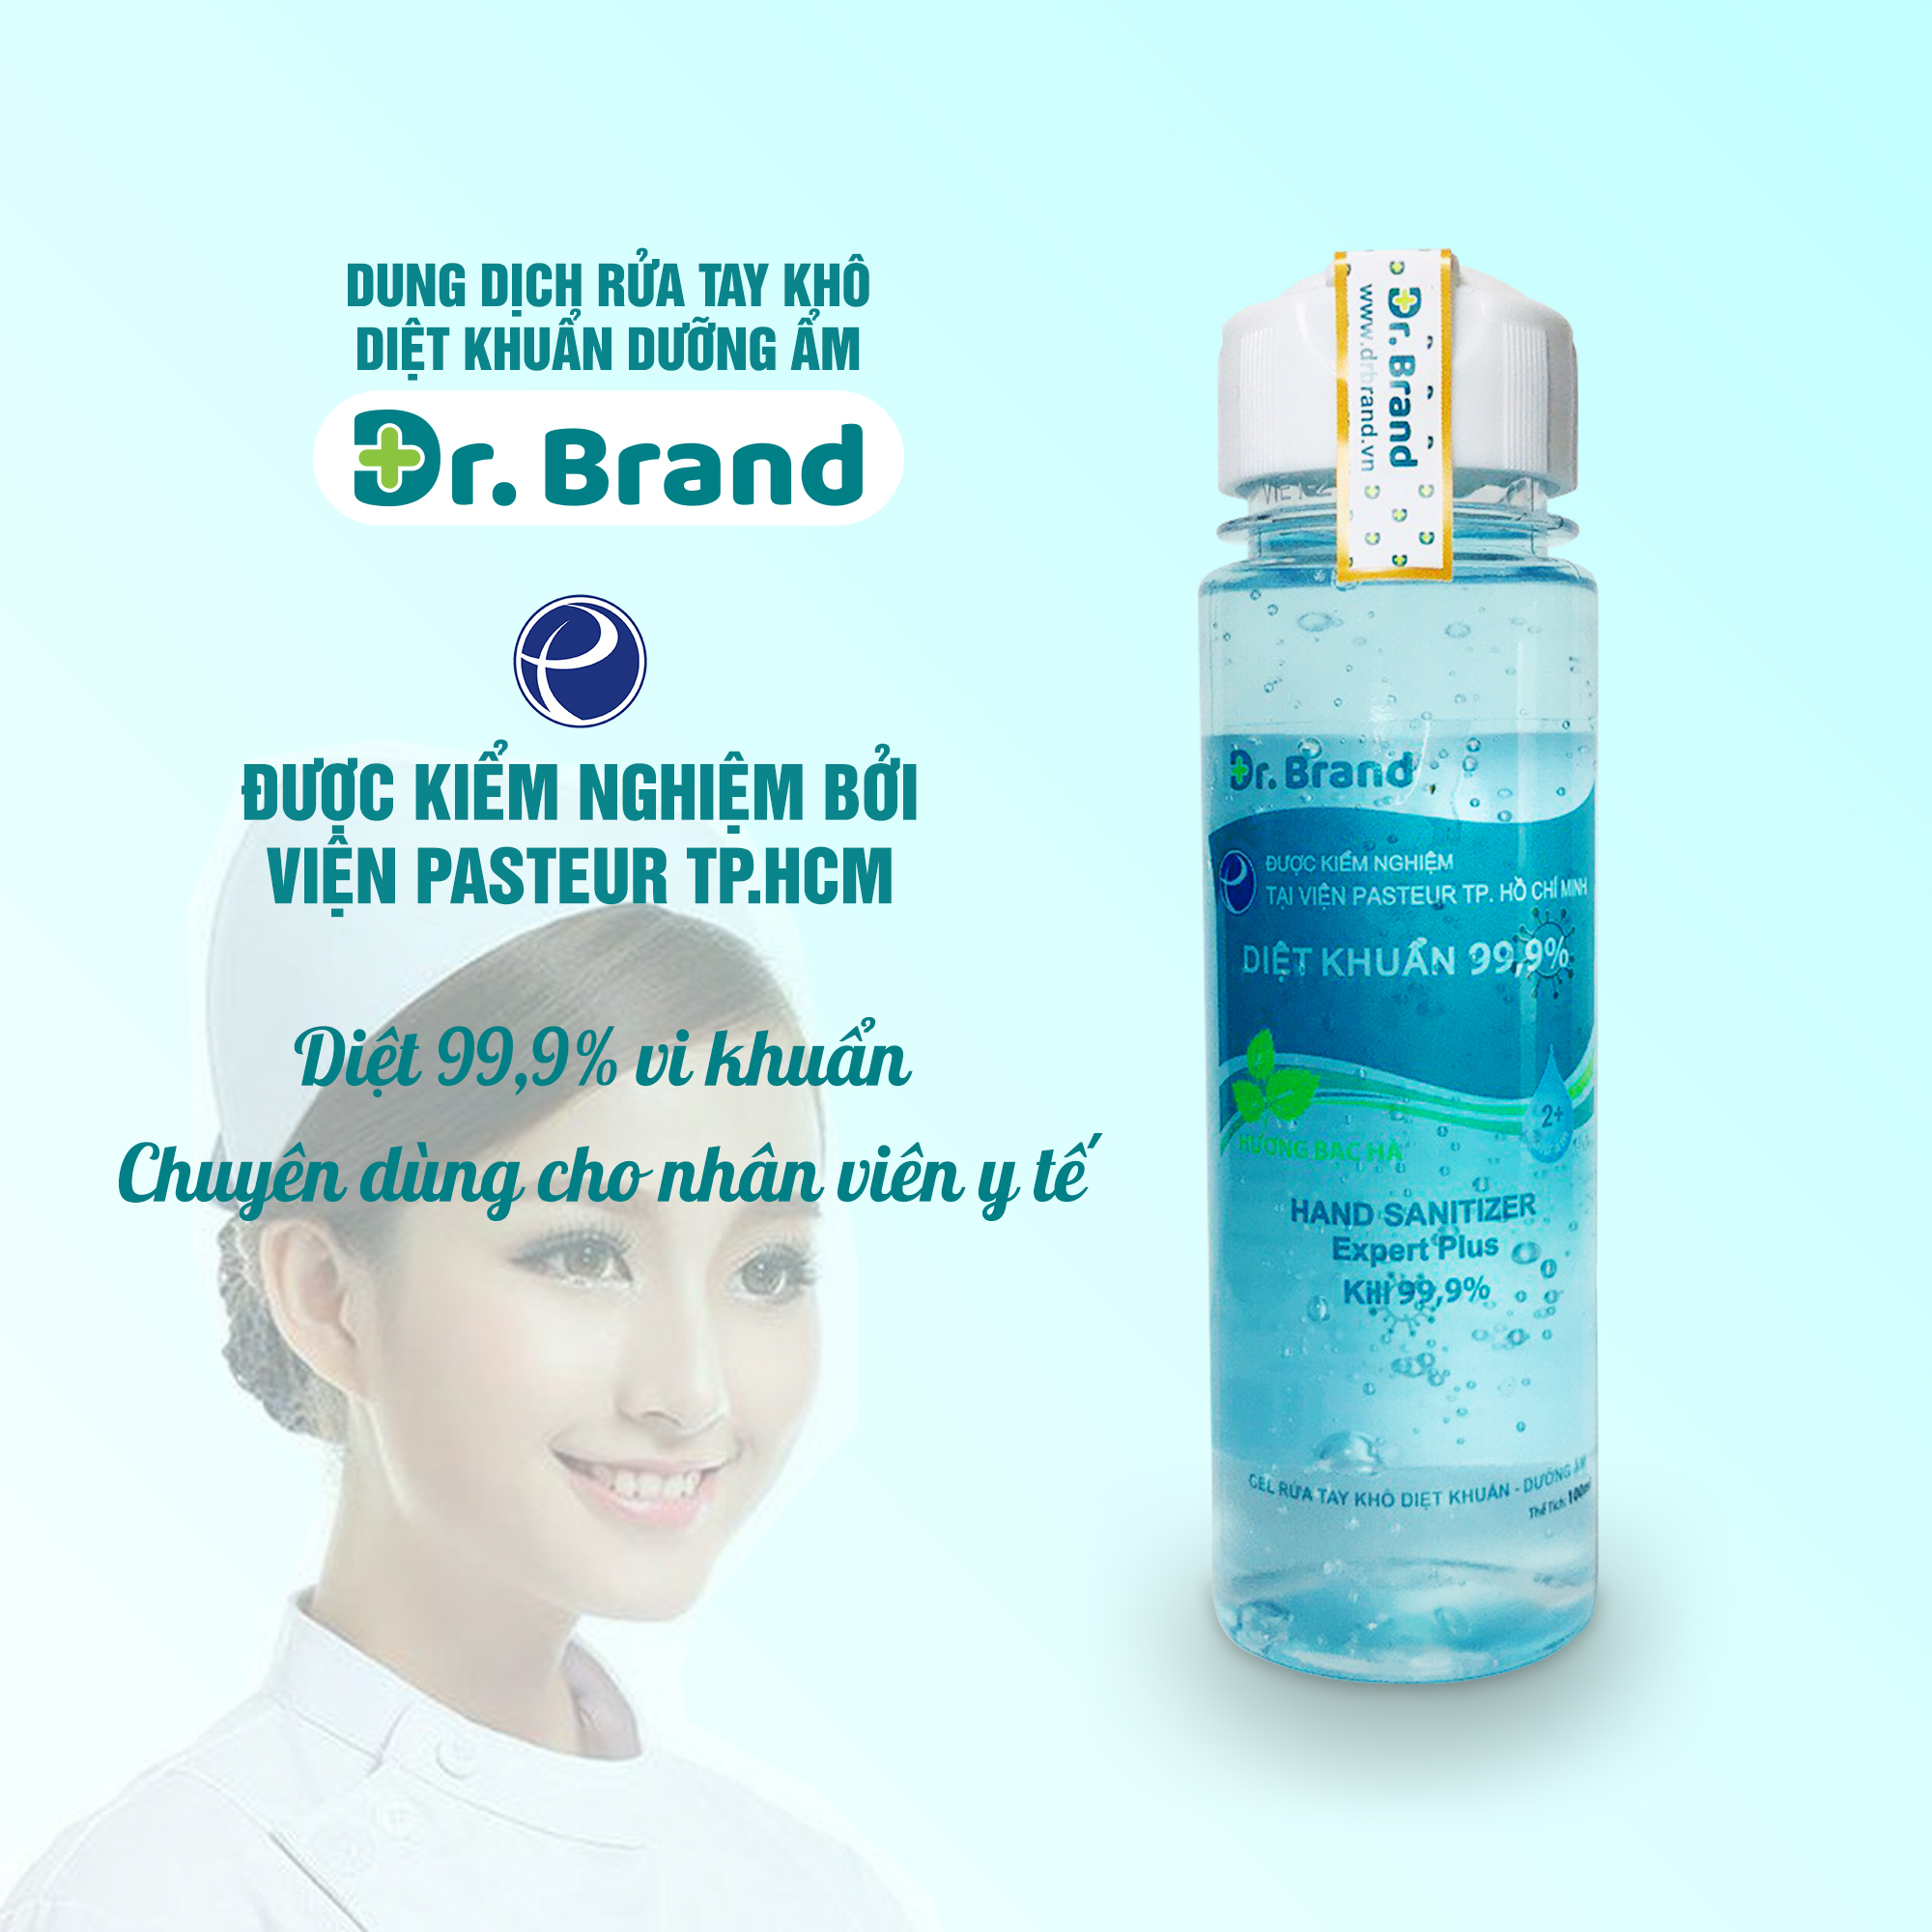 Nước rửa tay khô diệt khuẩn, ngăn ngừa virus chuyên dùng cho nhân viên y tế, được kiểm nghiệm tại viện Pasteur Tp.Hồ Chí Minh – Dr.Brand – 100ml - Tặng 1 vòng tay chỉ đỏ may mắn